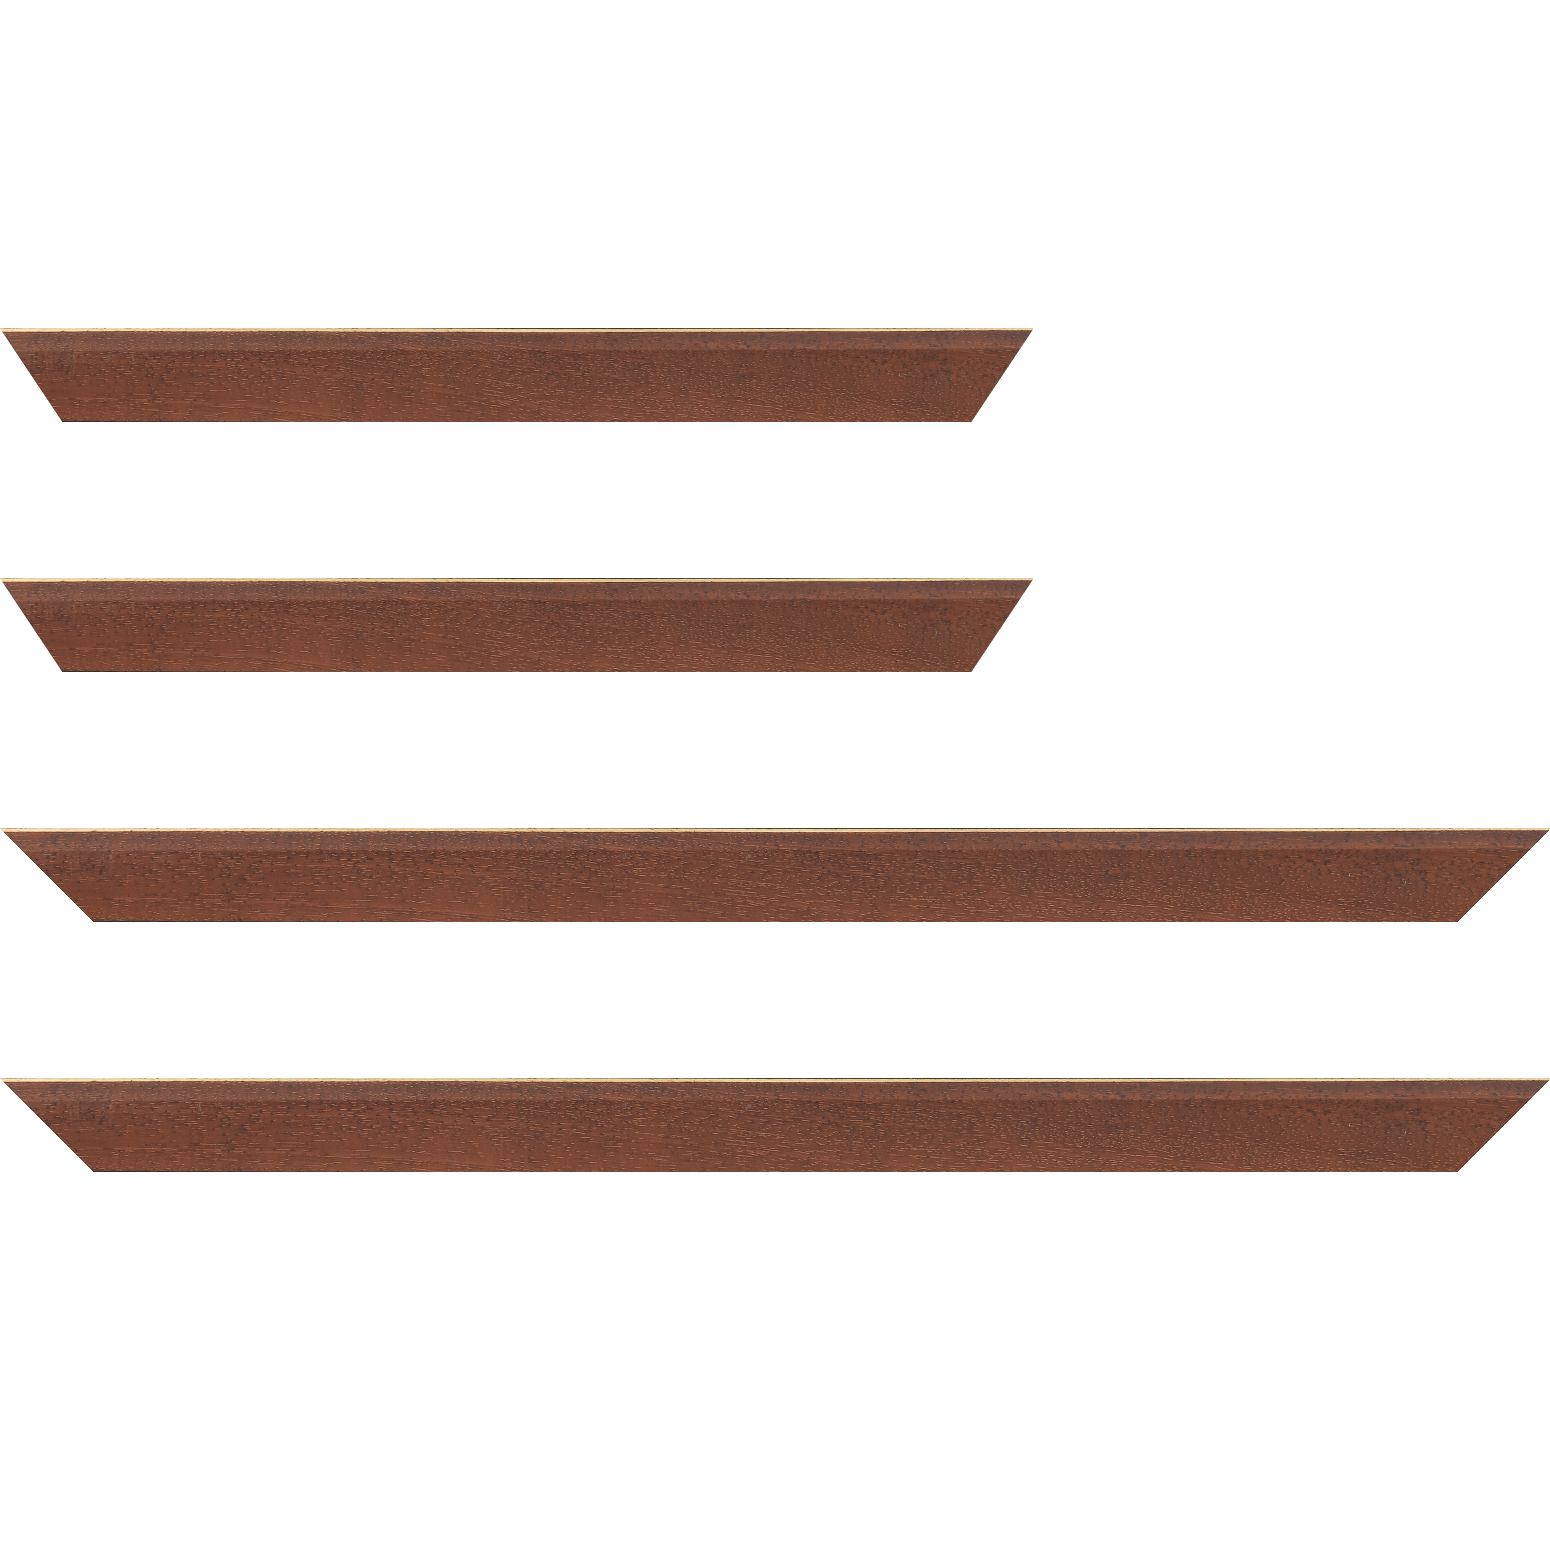 Baguette bois profil plat escalier largeur 3cm couleur marron miel satiné filet créme extérieur - 24x30